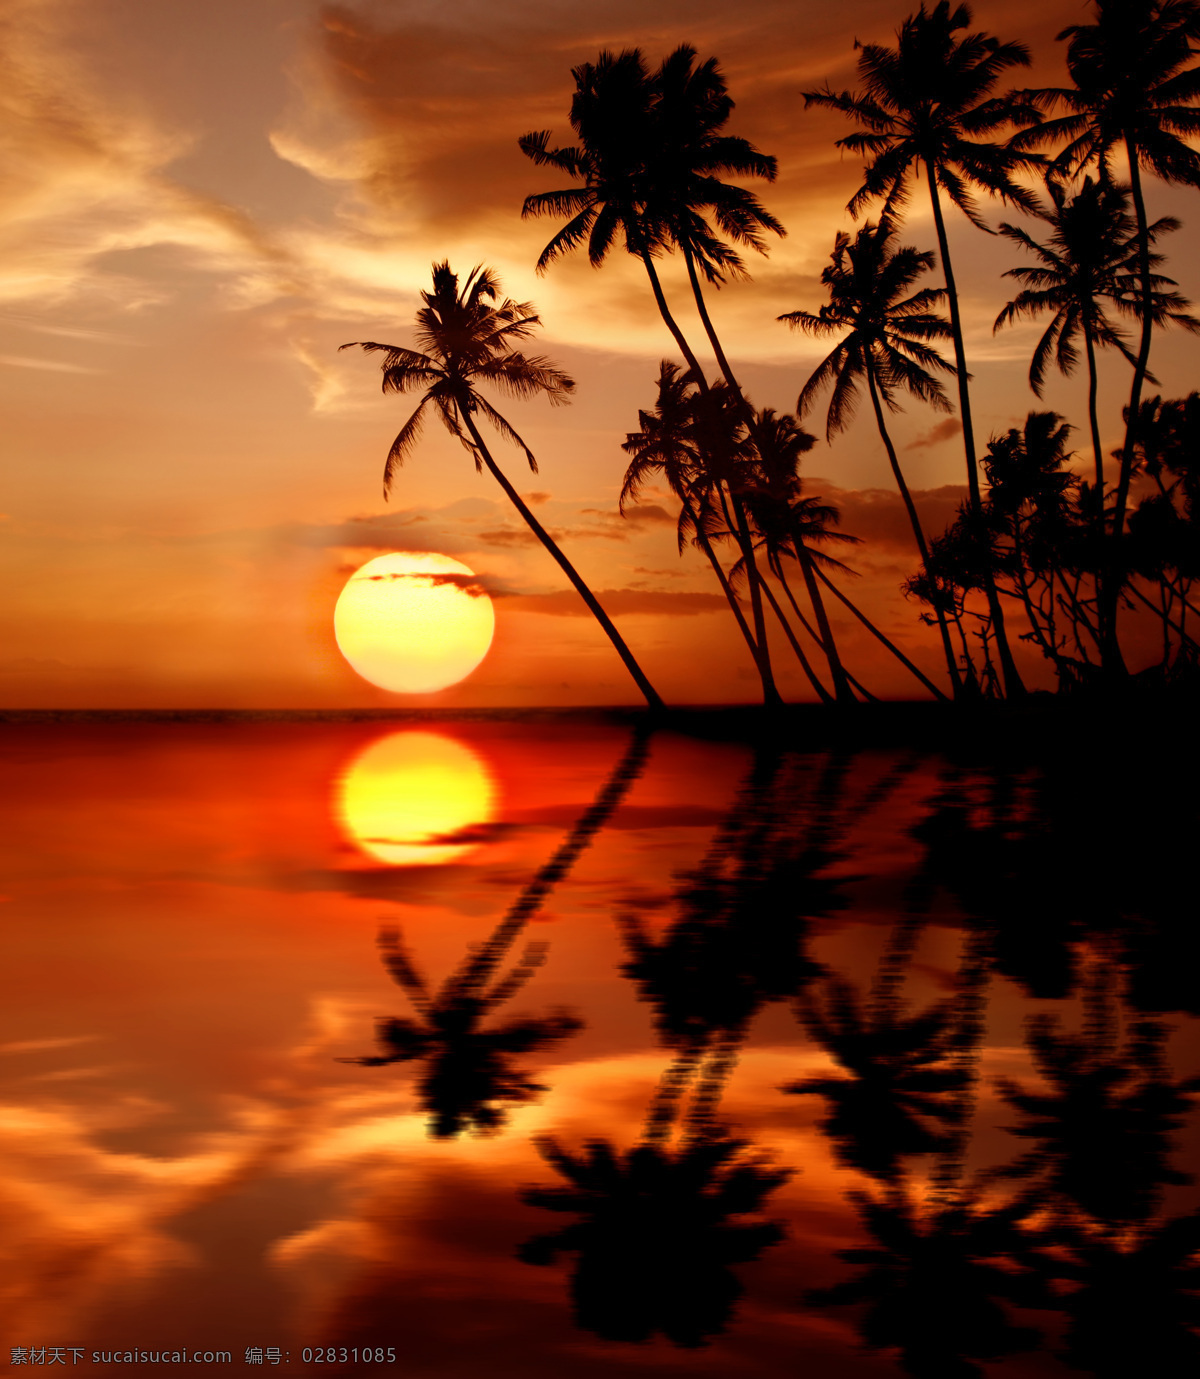 海面 上 椰子树 太阳 倒影 海洋 落日 风景图片 大海图片